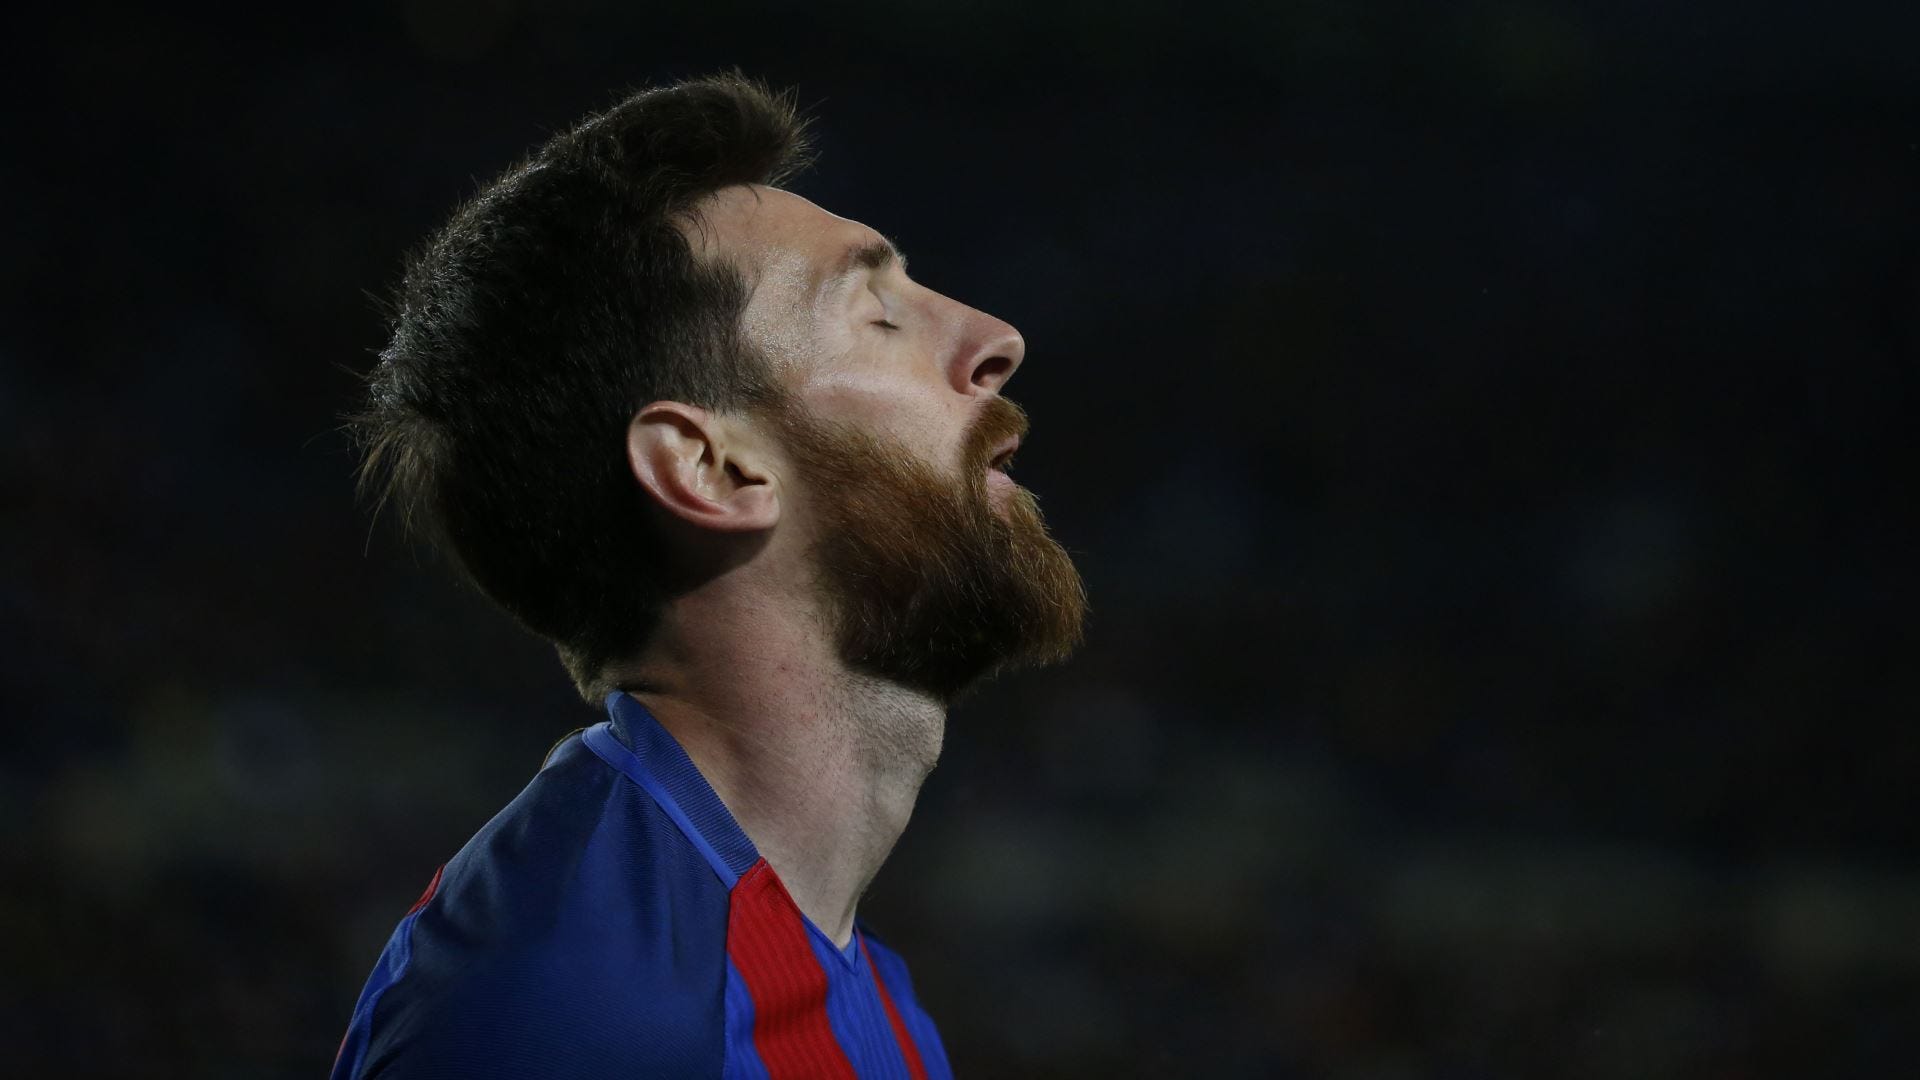 Messi kỉ lục buồn: Xem hình ảnh này để tôn vinh Messi, một trong những cầu thủ vĩ đại nhất mọi thời đại - dù anh ấy đang rơi vào giai đoạn buồn bã, nhưng kỉ lục của anh ấy vẫn là một thành tựu đáng nể.